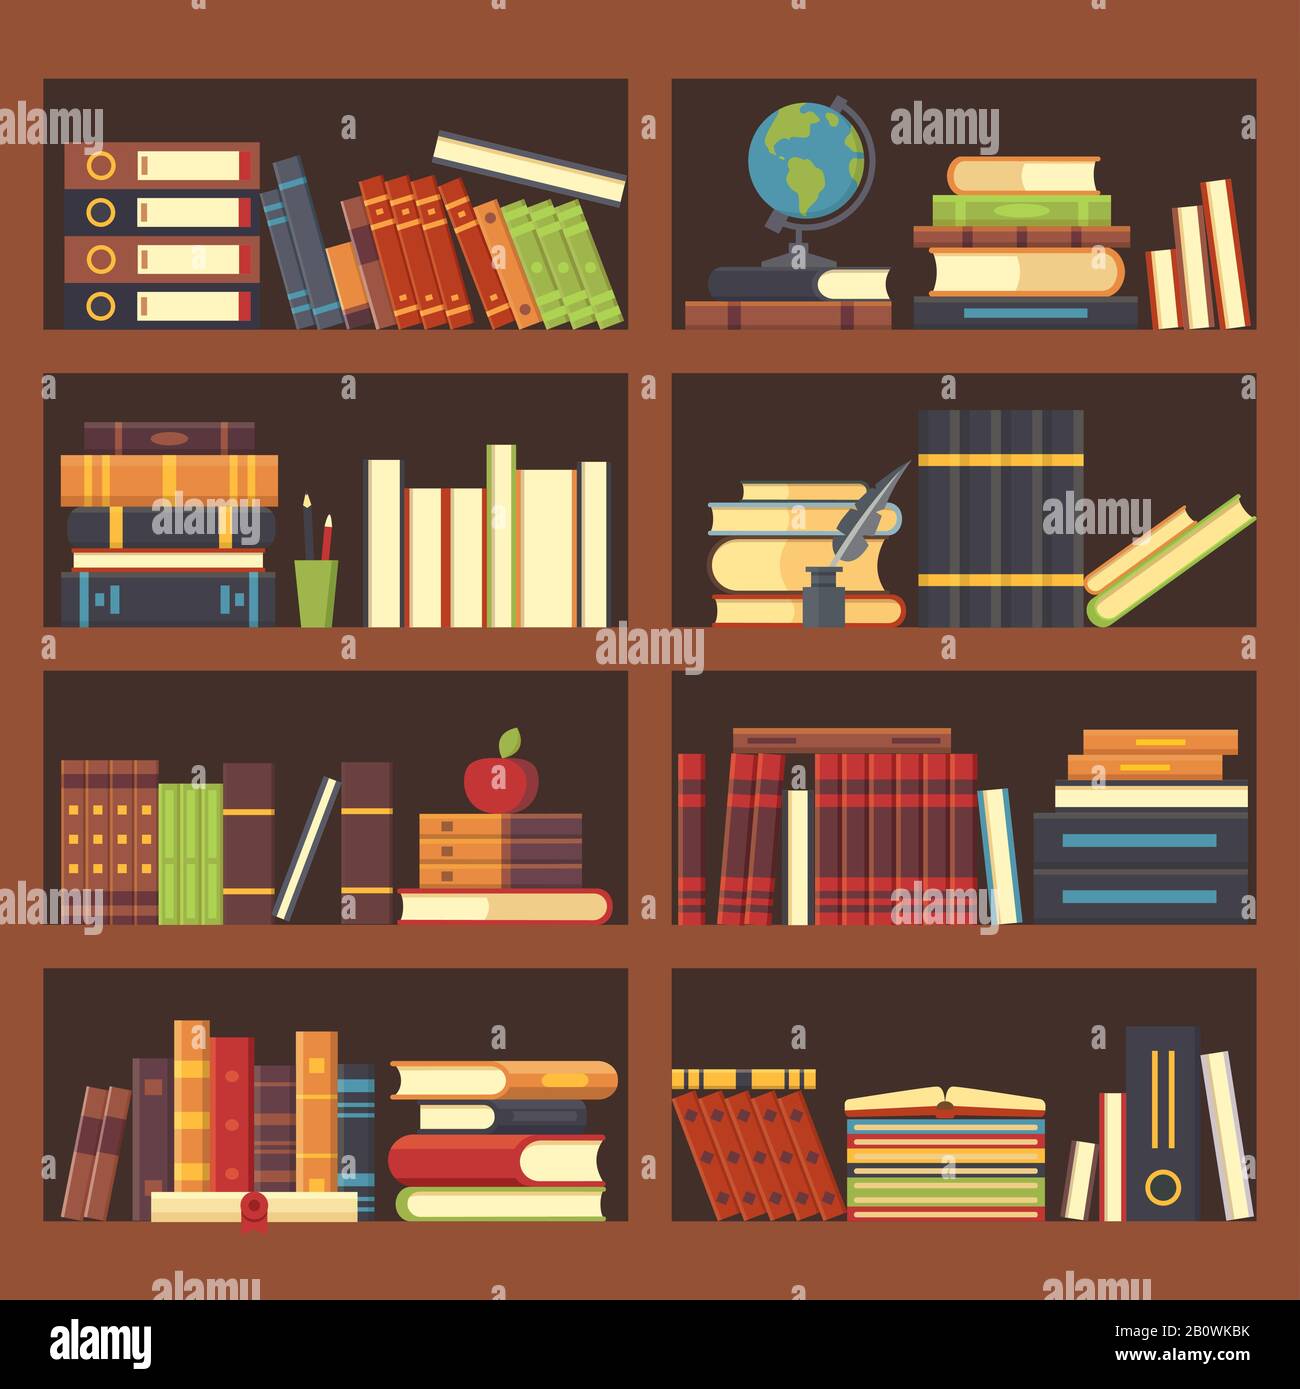 Bücher im Bücherregal. Lexikonbuch im Bücherregal. Stapeln Sie Lehrbücher und Zeitschriften in den Bücherregalen Vektor-Hintergrundillustration Stock Vektor